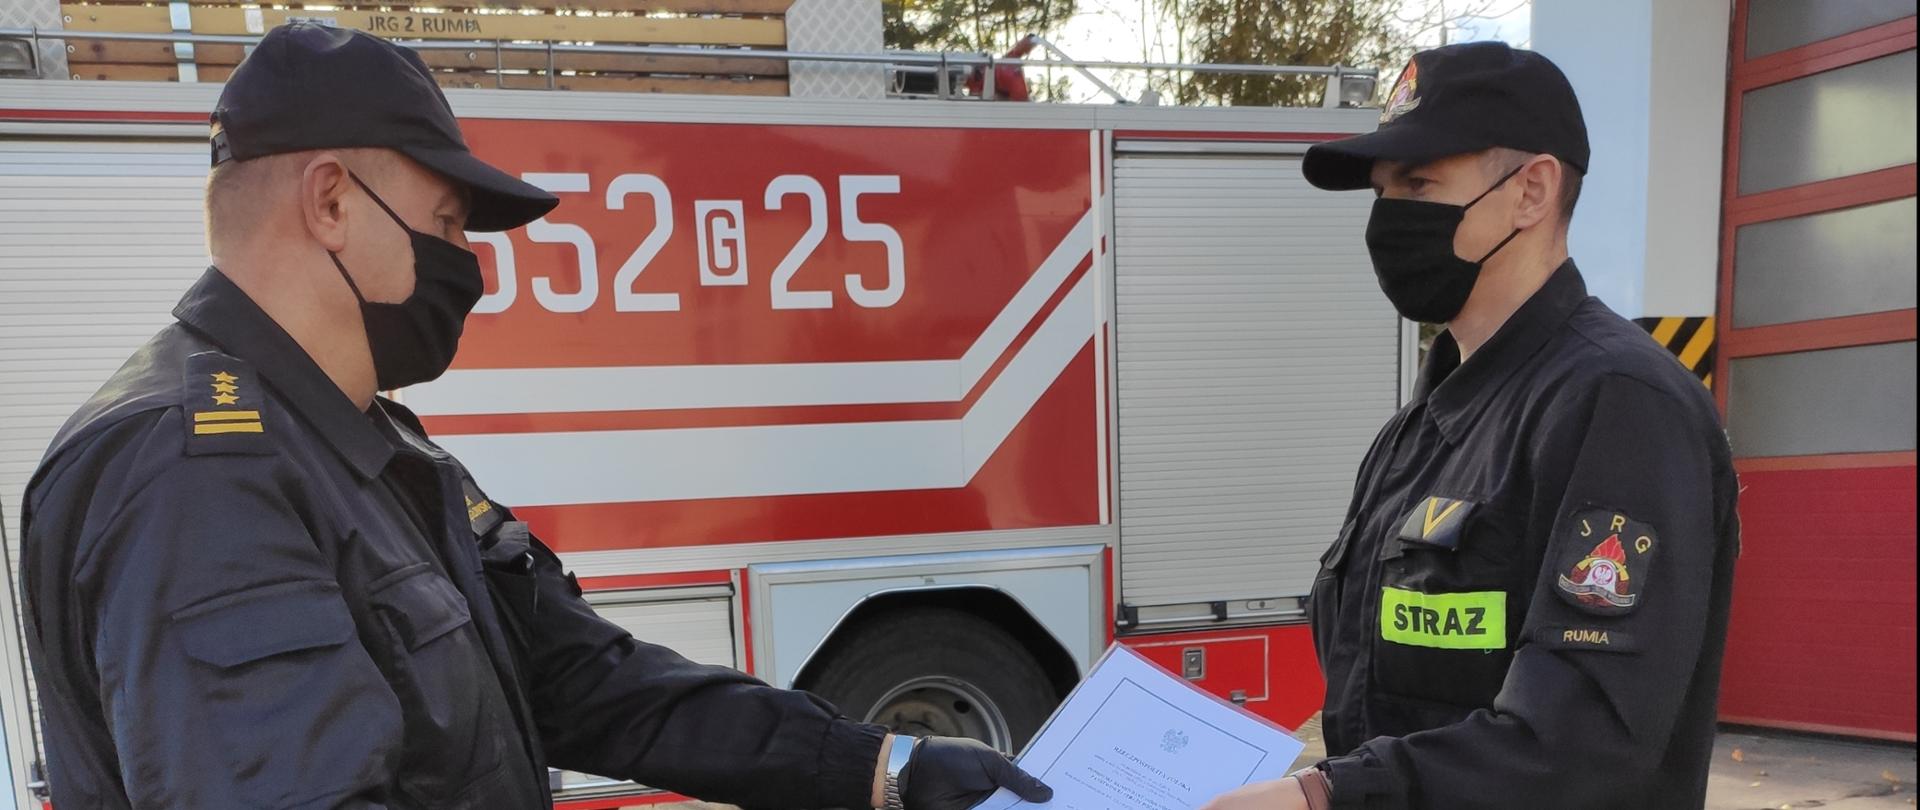 Zdjęcie przedstawia wręczenie aktu nadania wyższego stopnia służbowego przez komendanta powiatowego funkcjonariuszowi, w tle wóz strażacki.